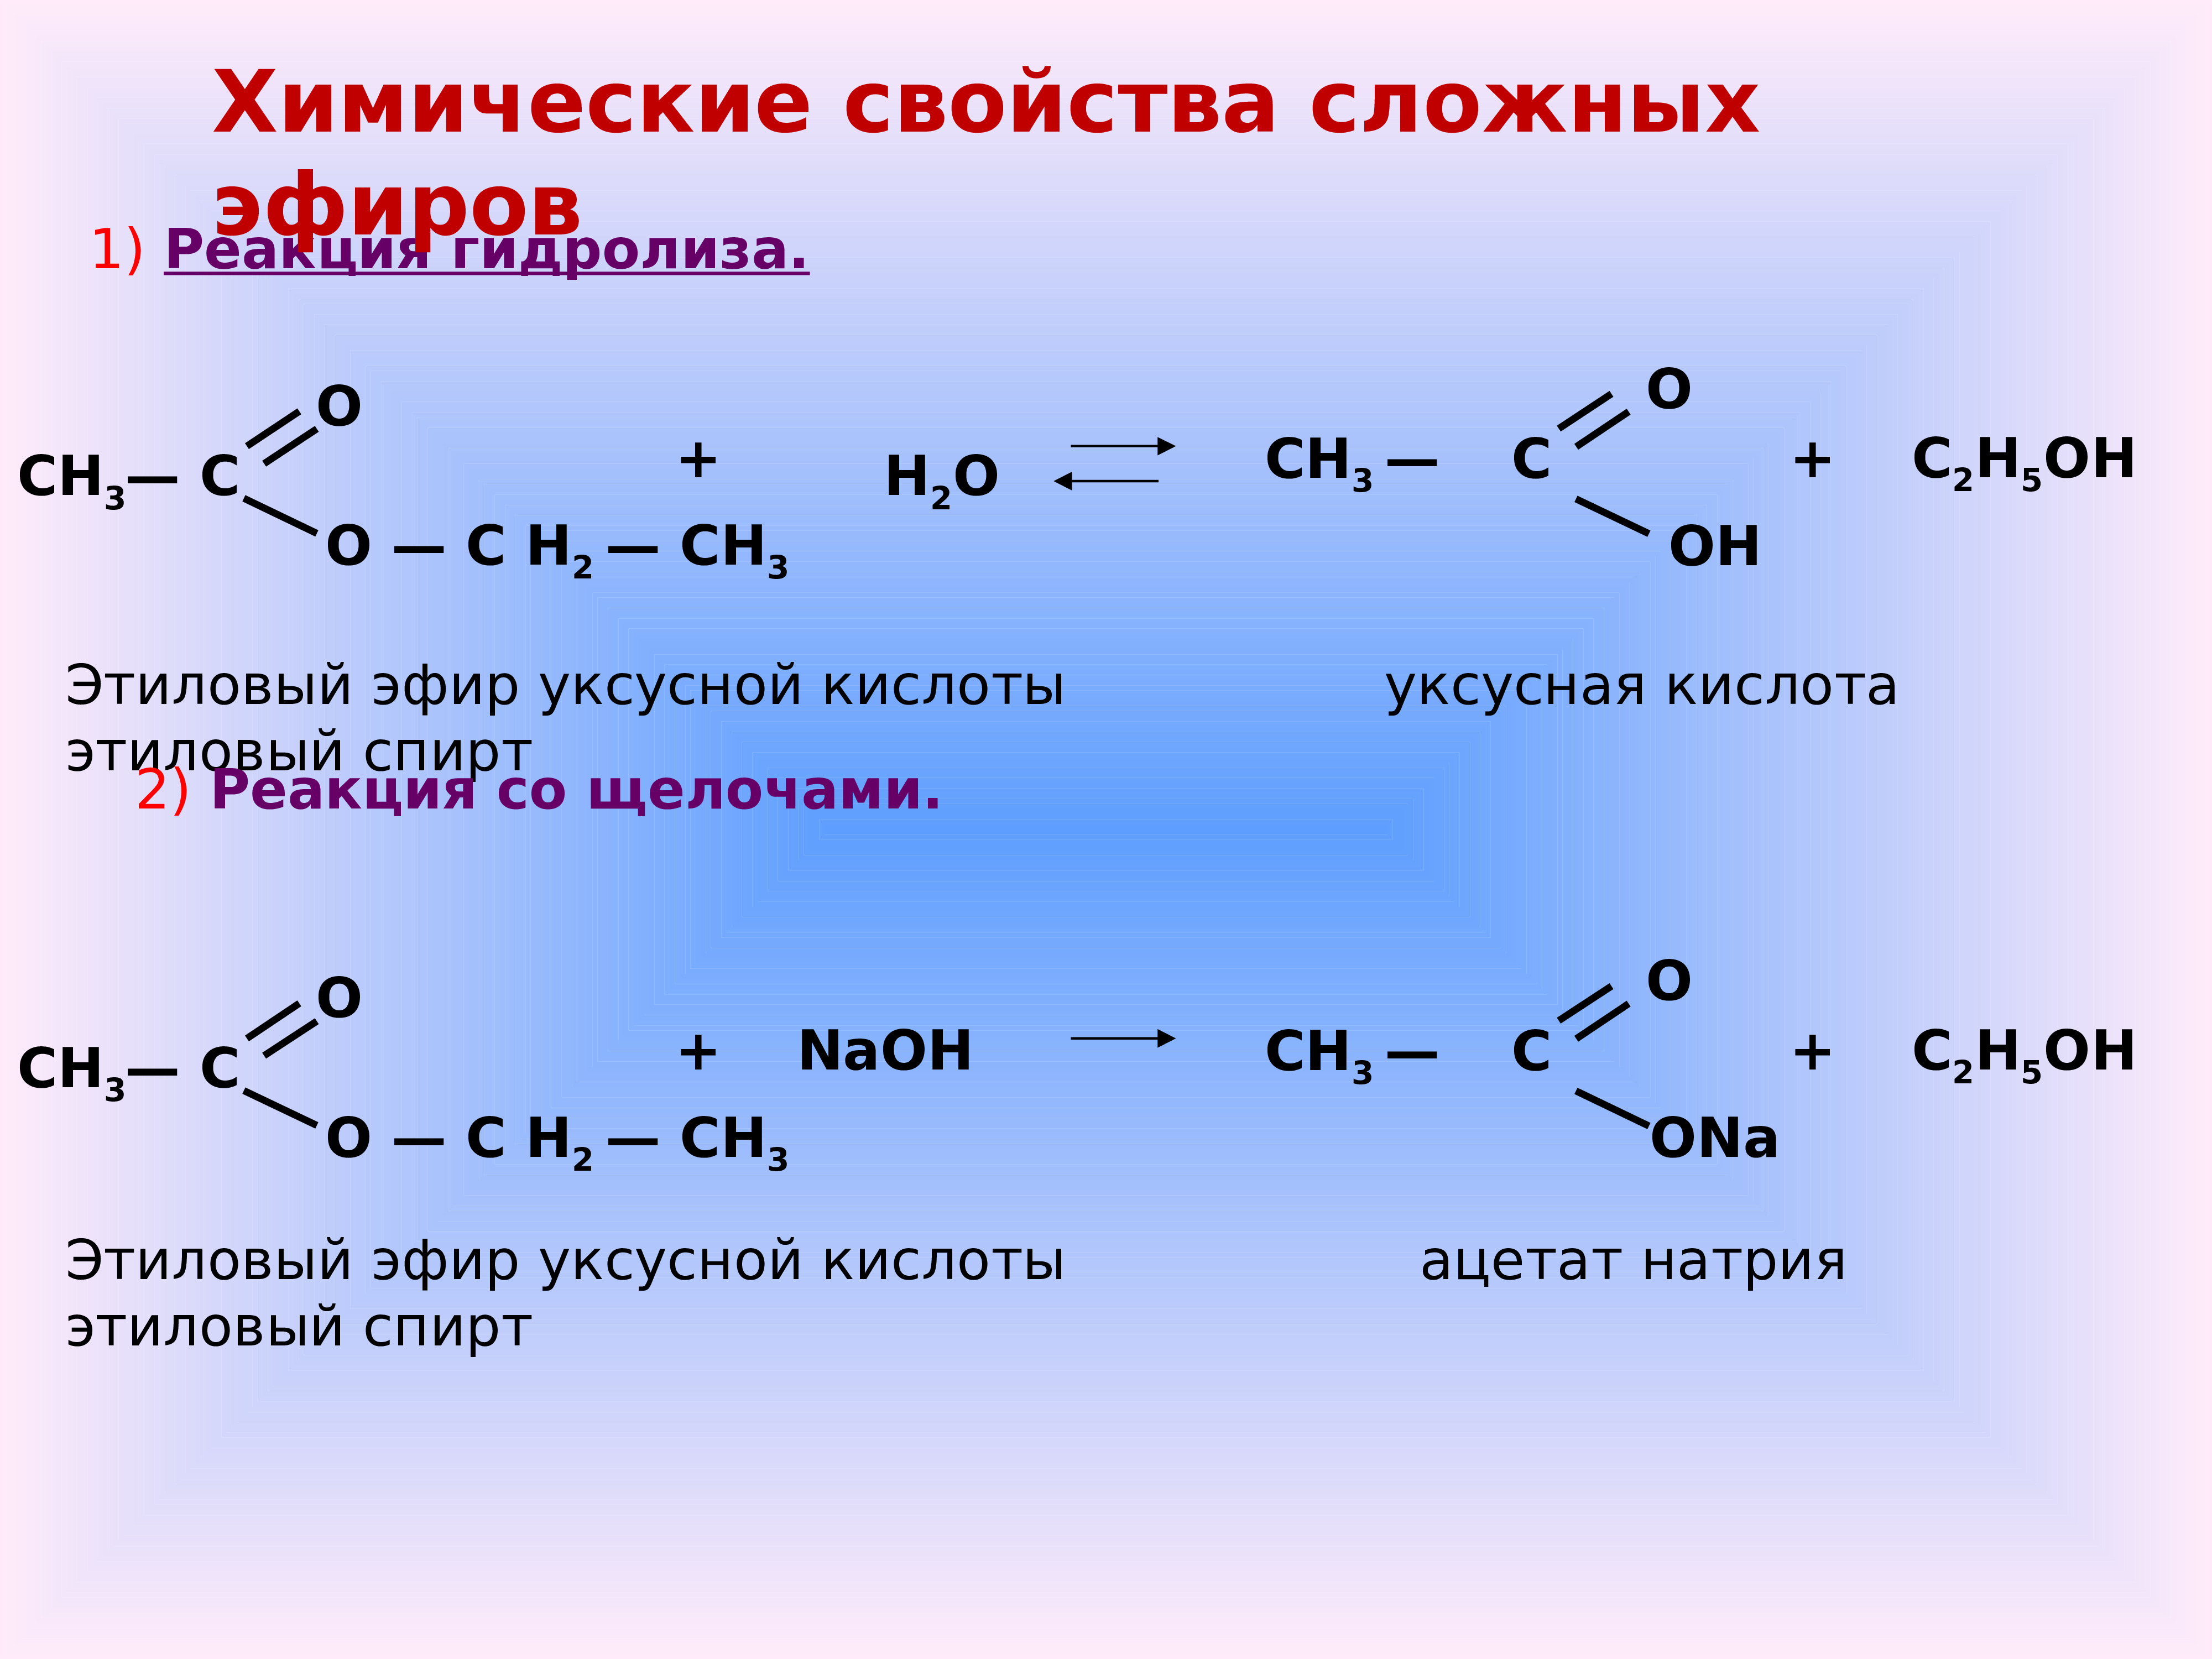 Сложные эфиры это органические соединения. Химические свойства сложных эфиров 10 класс химия. Сложные эфиры химия химические свойства. Презентация эфиры 10 класс химия. Общая формула сложных эфиров по химии 10 класс.